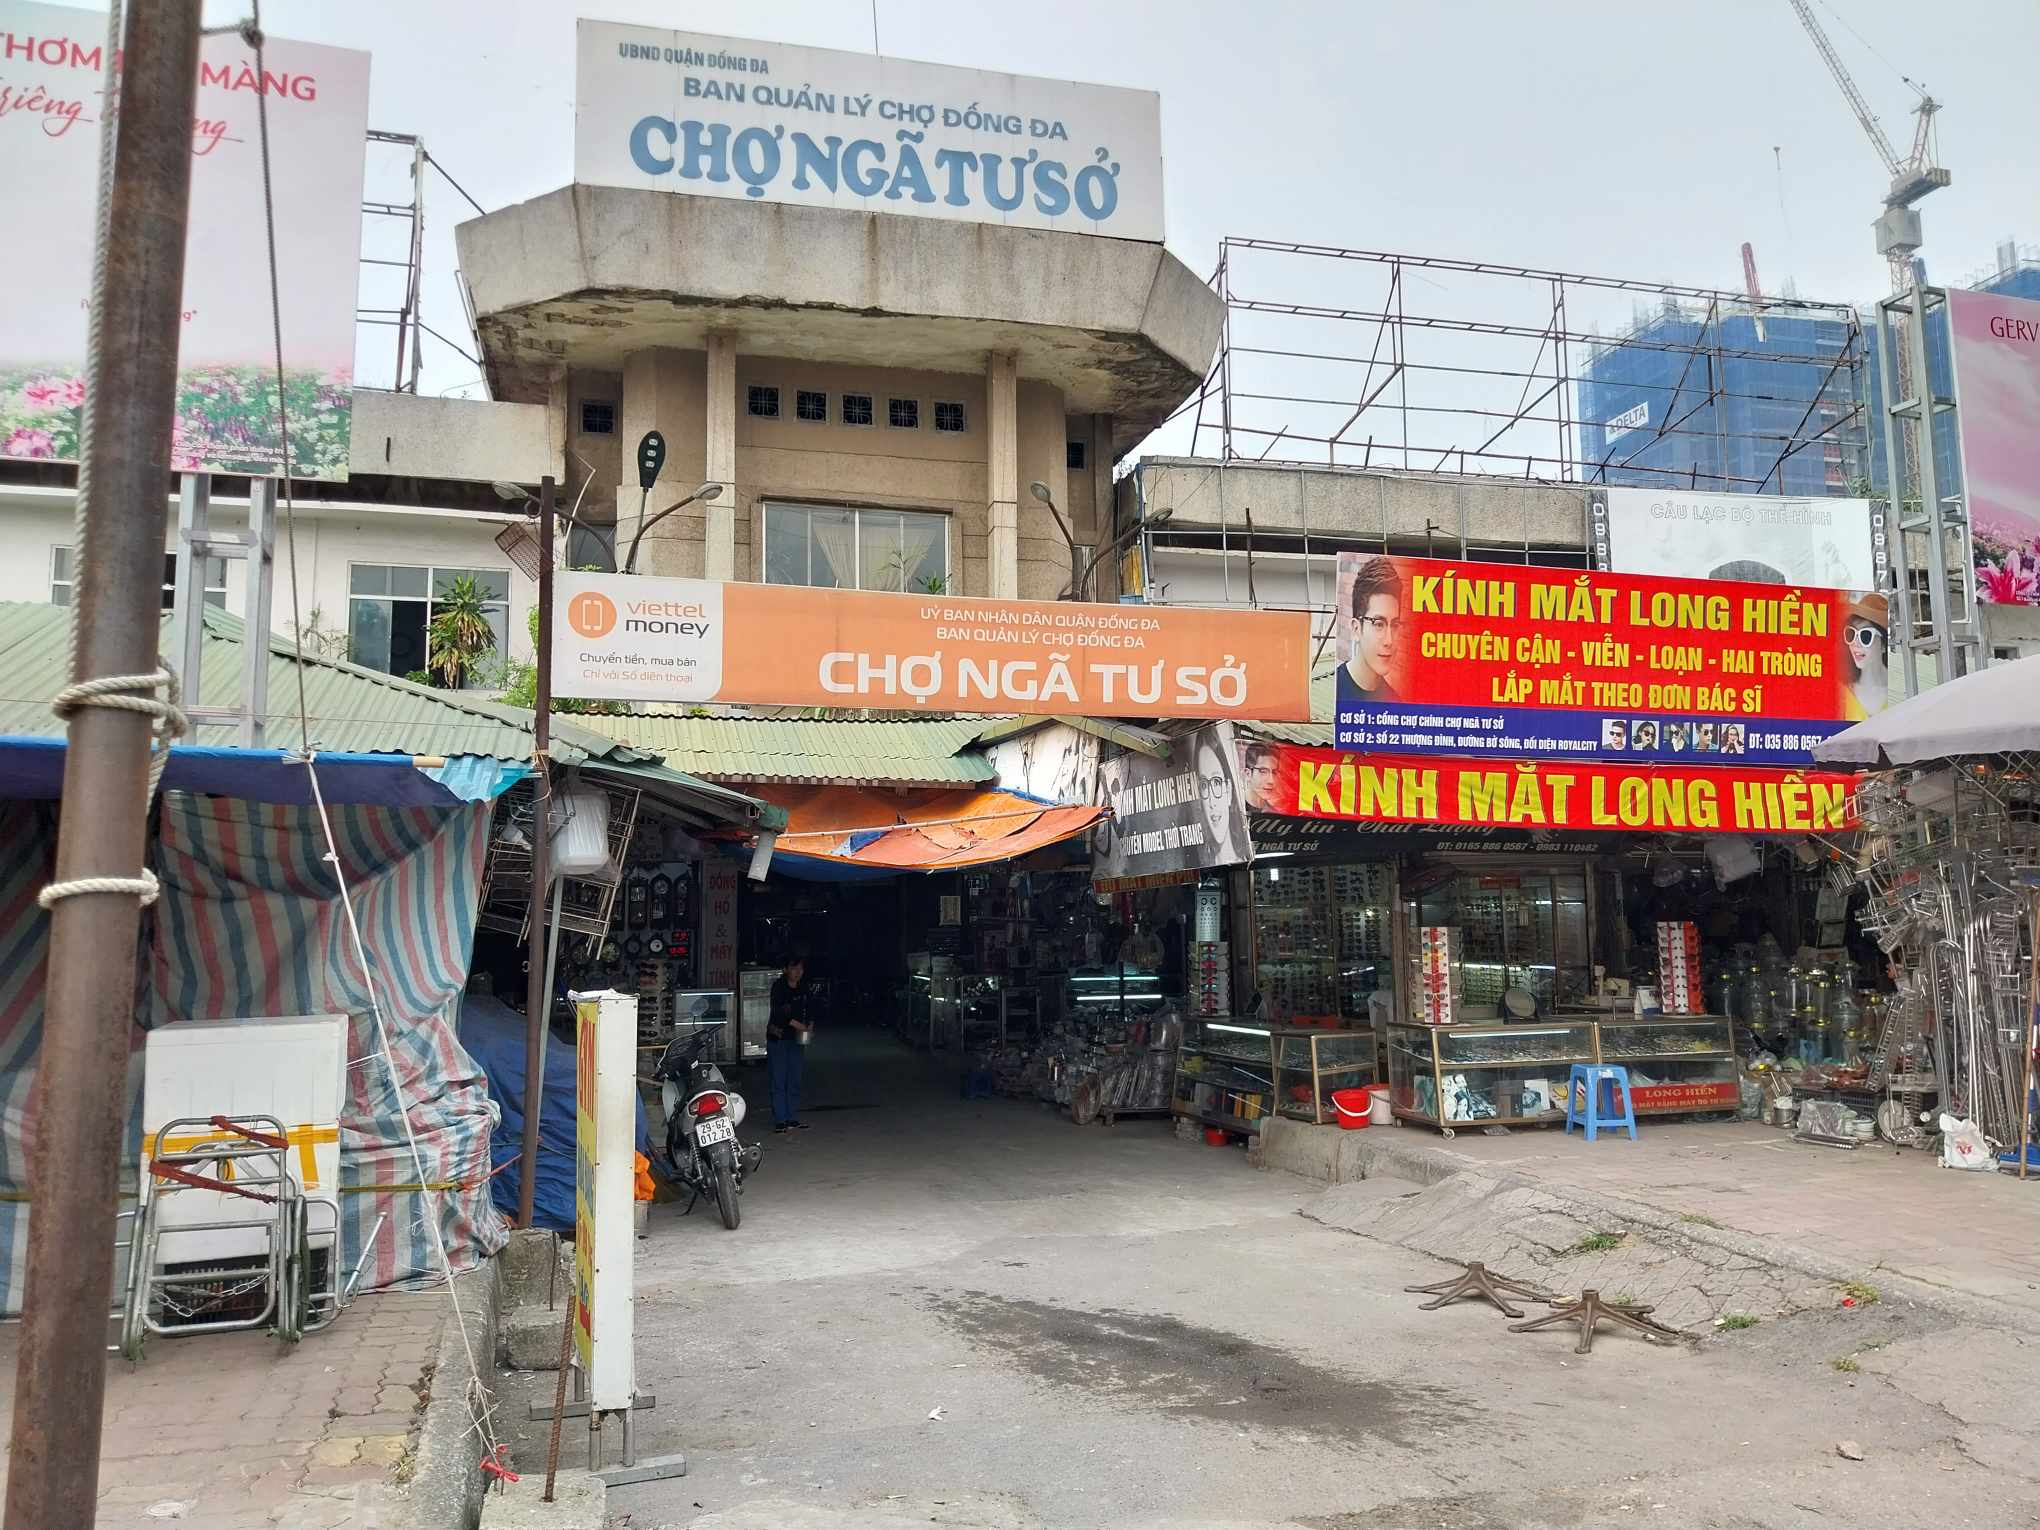 Chợ Ngã Tư Sở được xây dựng và đưa vào sử dụng từ năm 1987, có diện tích trên 8.000 m2 từng là một trong những khu chợ sầm uất và đông đúc bậc nhất tại Hà Nội.